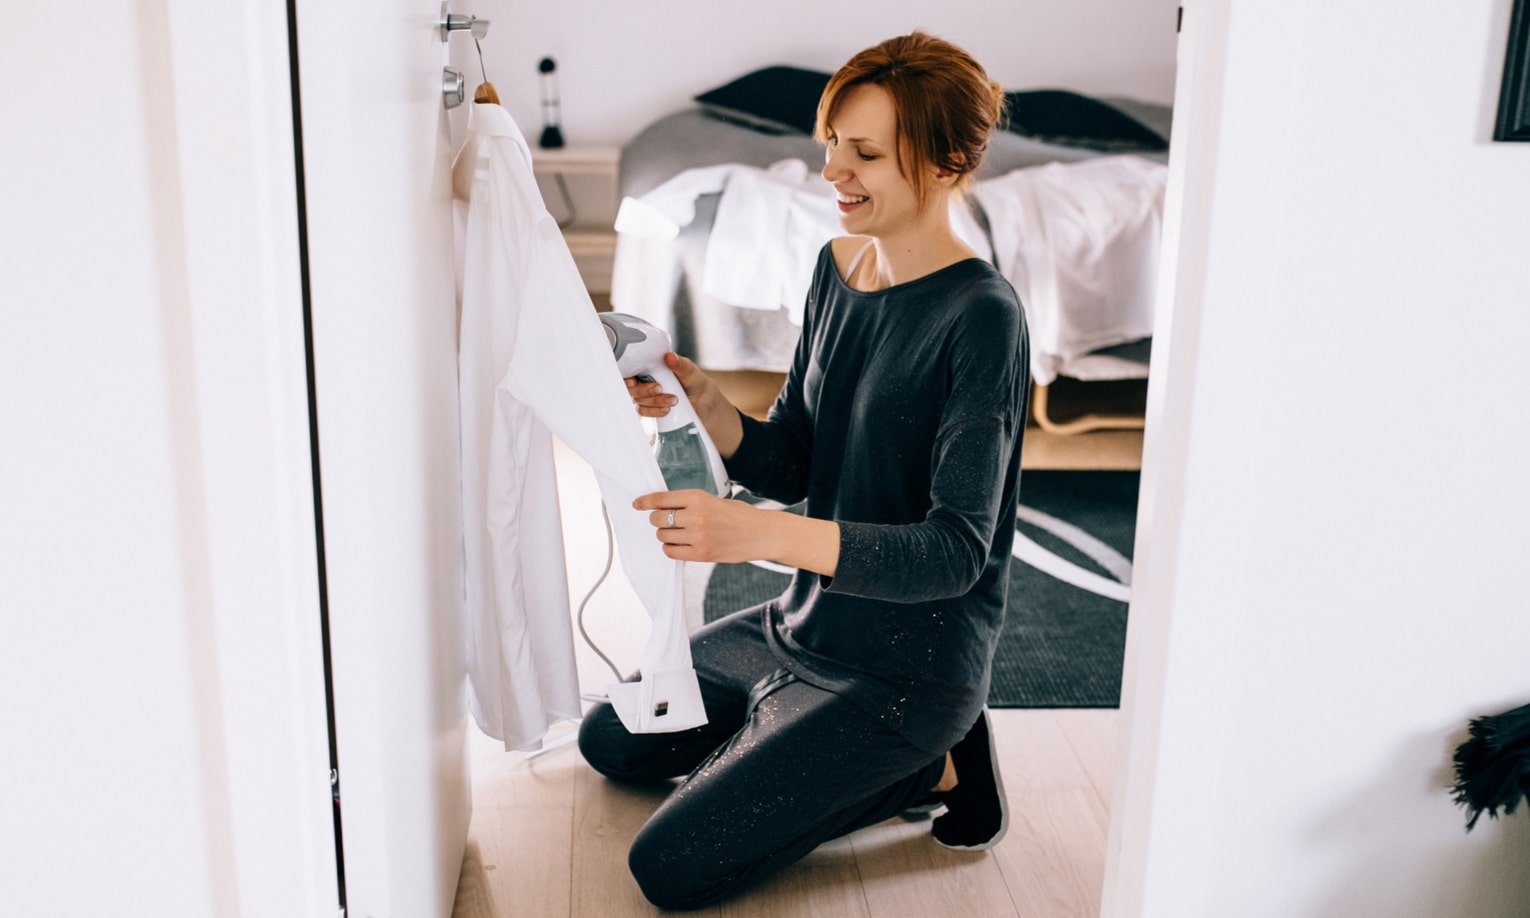 женщина гладит рубашку пааровым утюгом